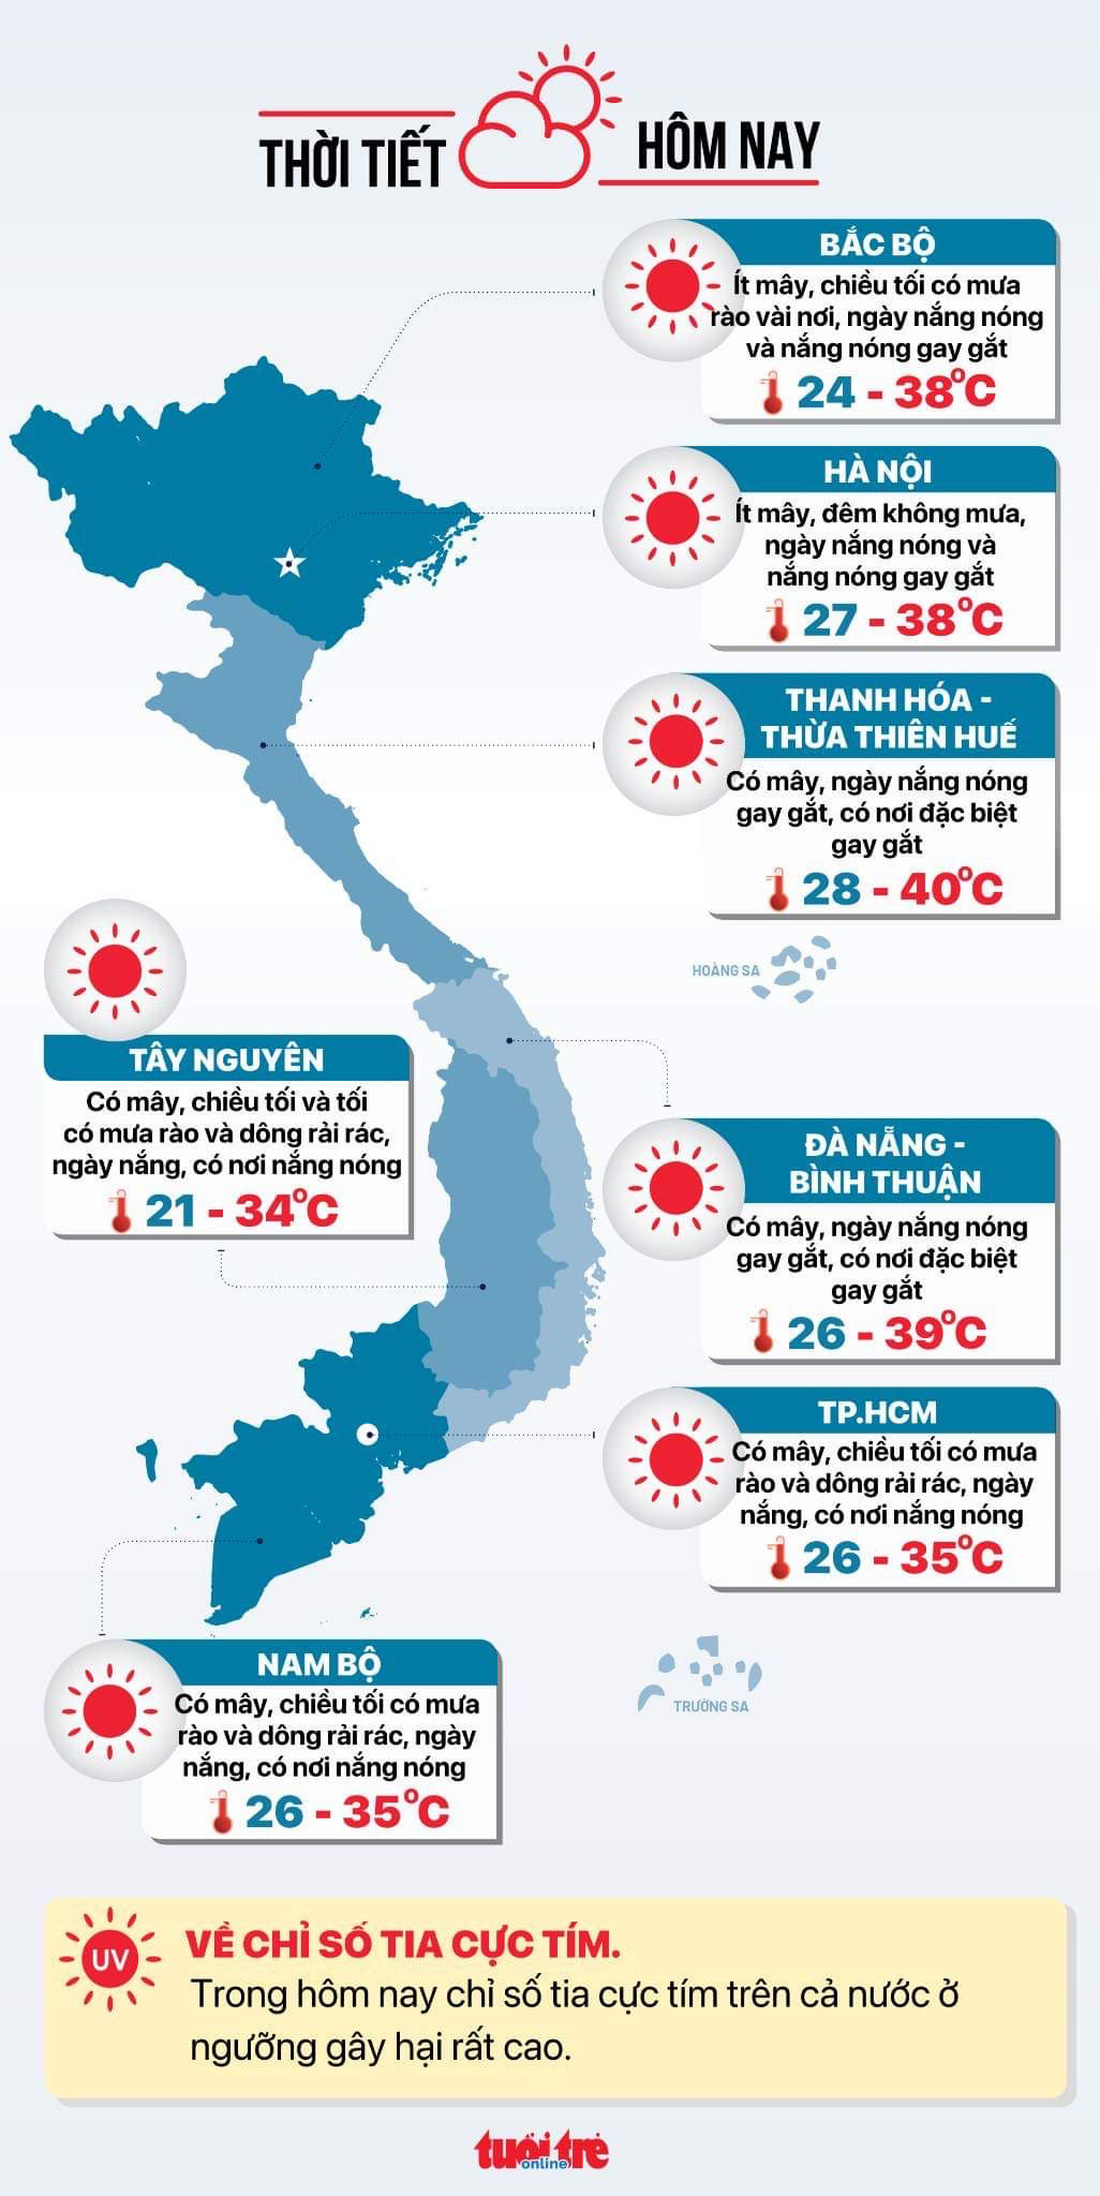 Tin tức sáng 20-5: Việt Nam đứng thứ 4/20 về thải rác nhựa ra biển; Tăng giá điện làm tăng lạm phát - Ảnh 5.